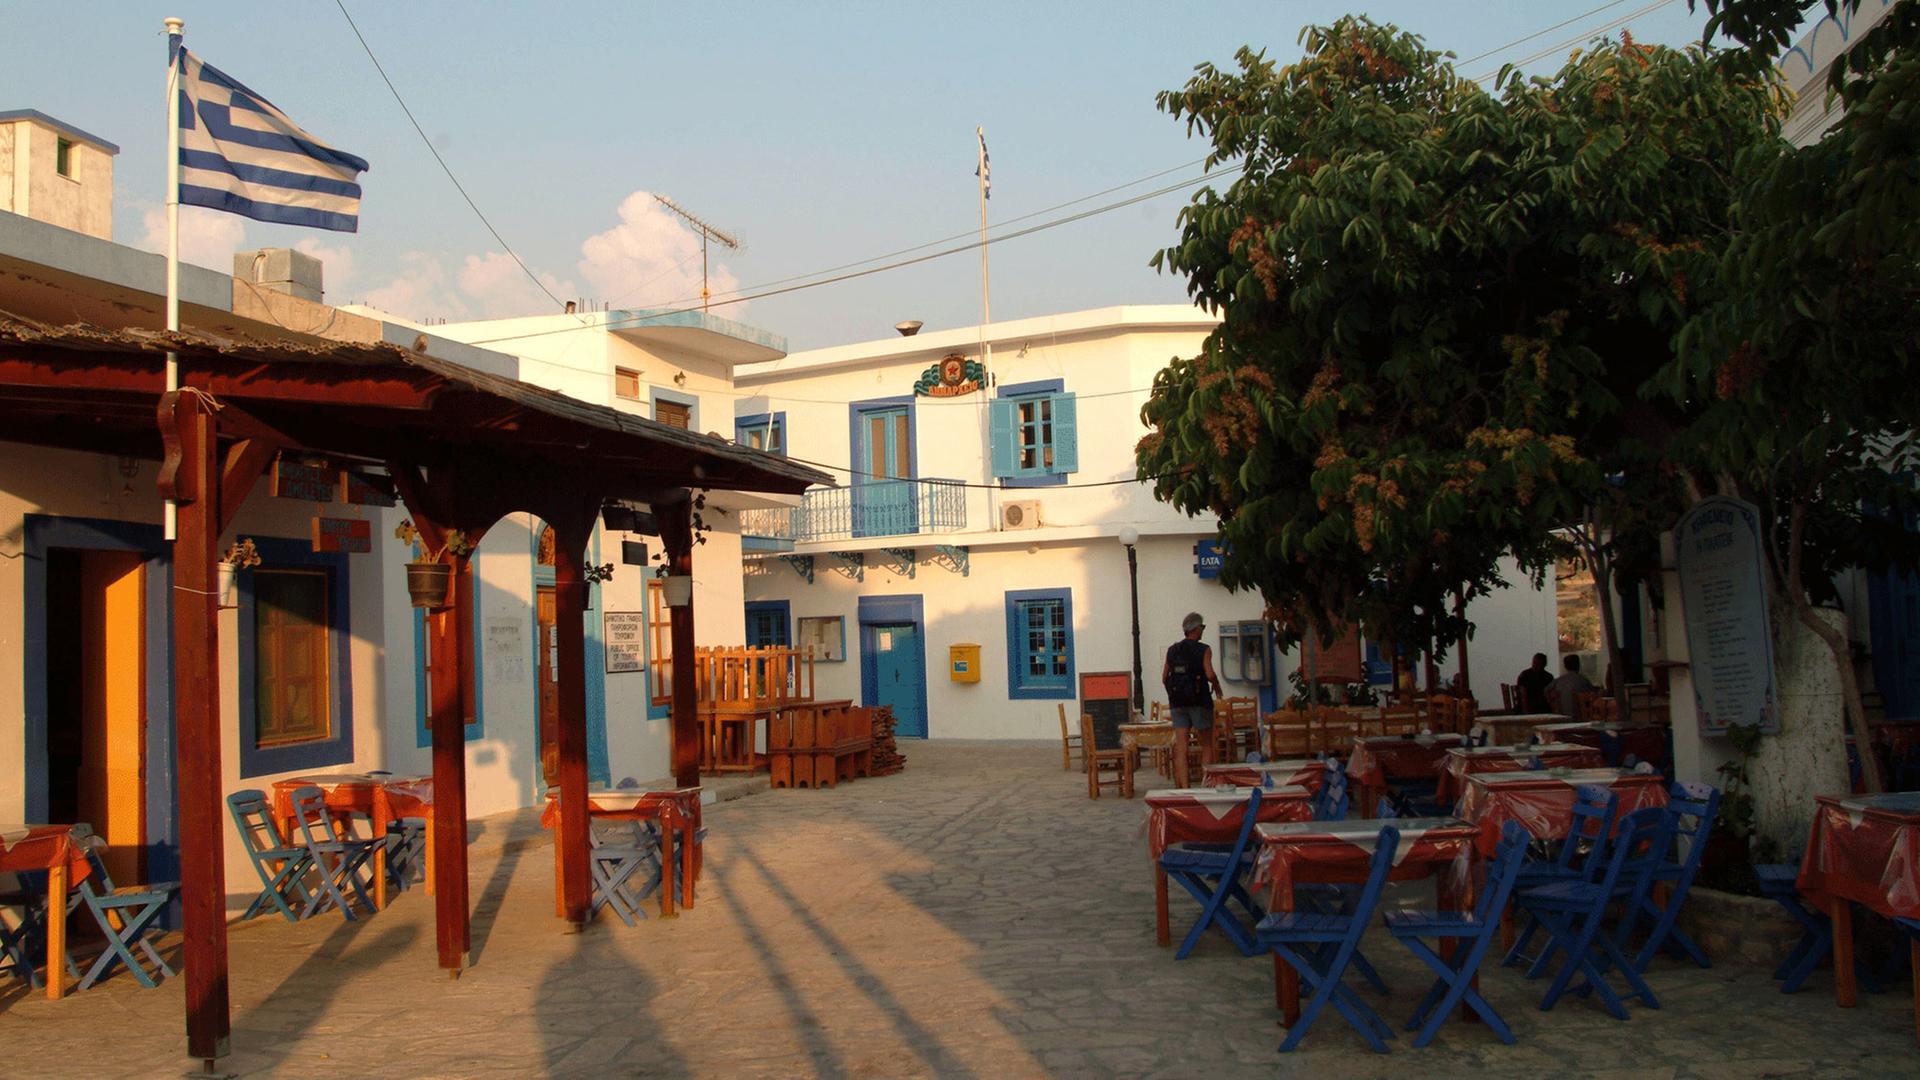 Dorfplatz von Ormos Sokoro mit griechischer Fahne und einem leeren Straßencafe.